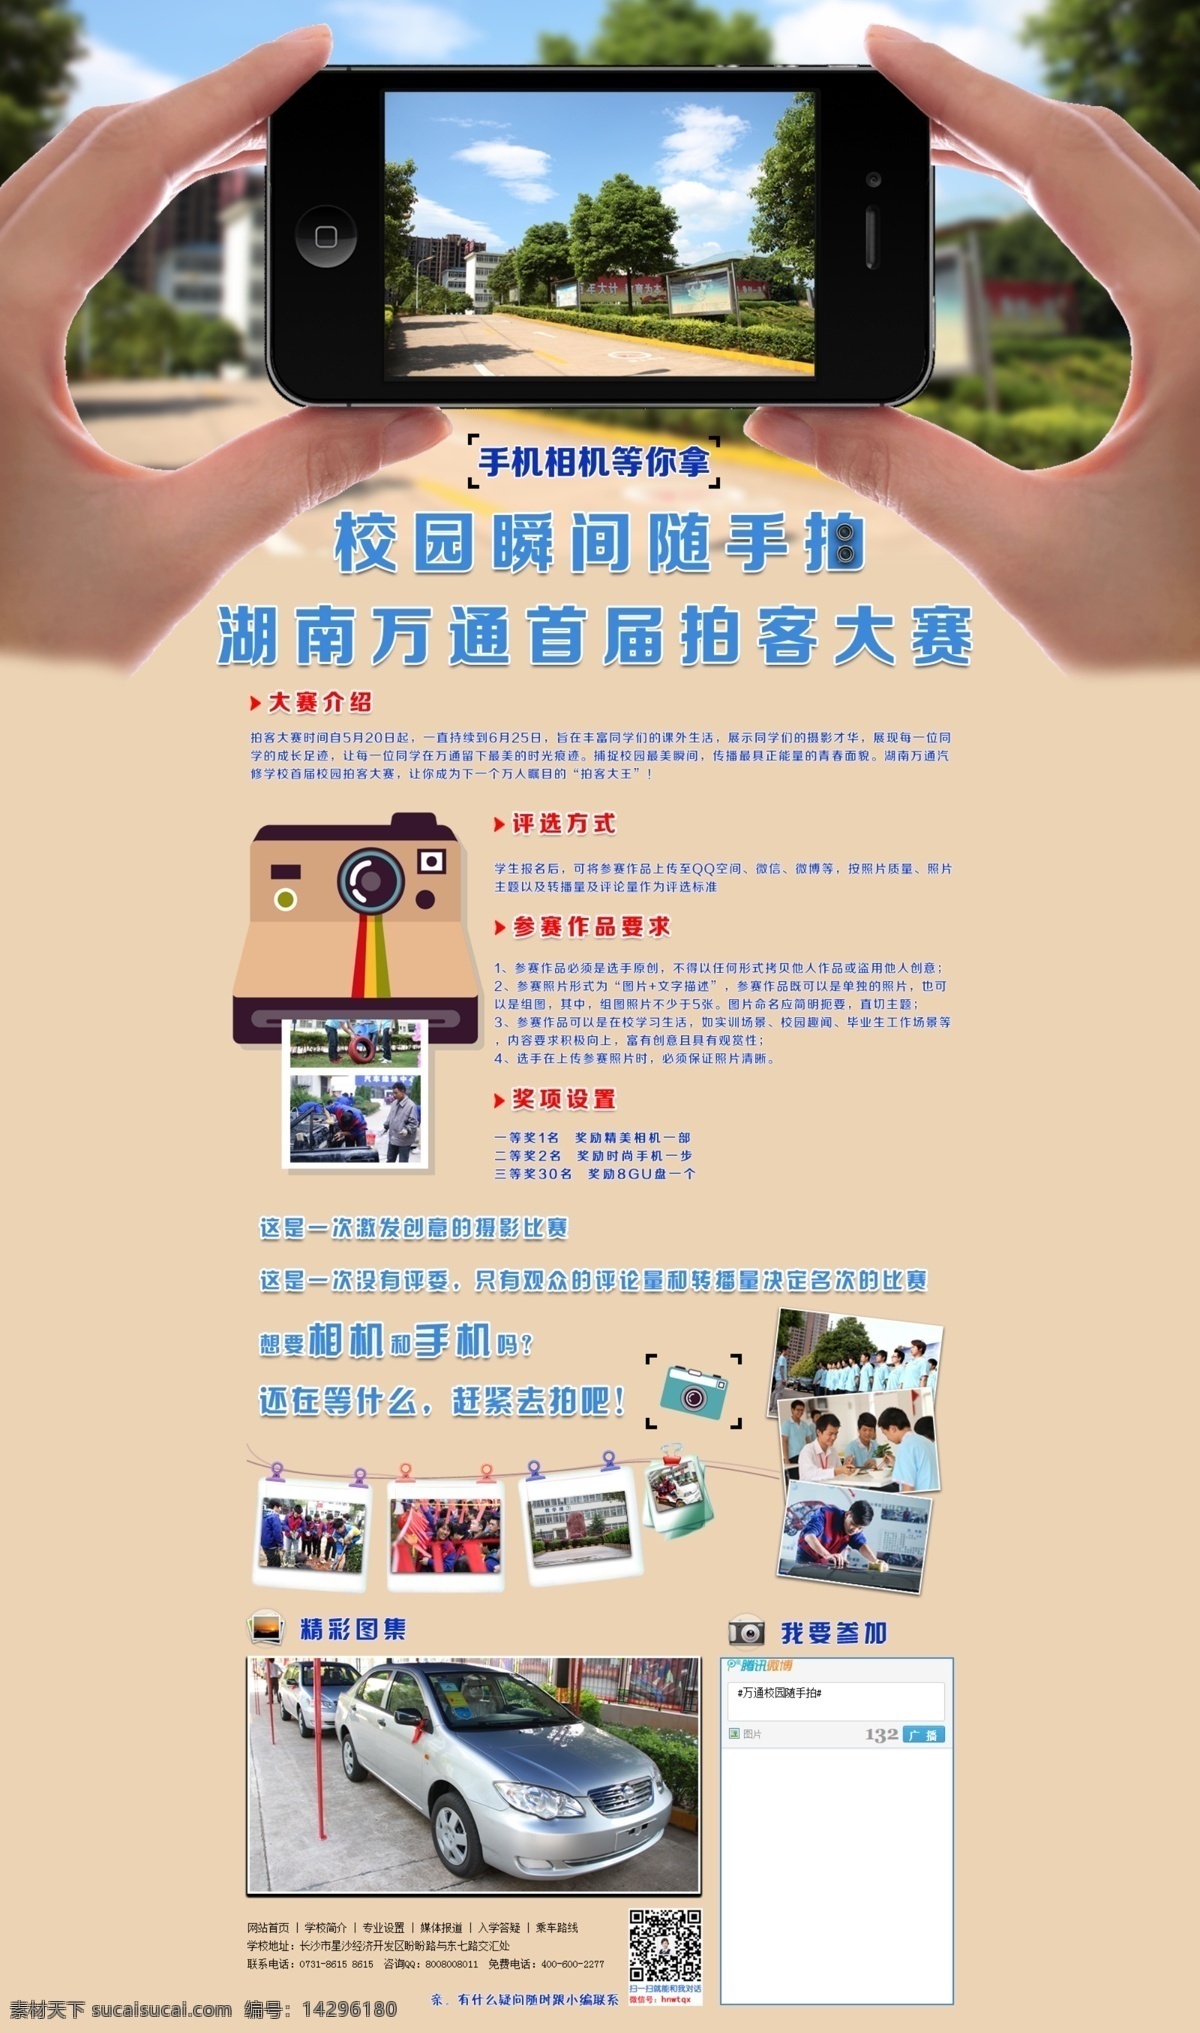 校园 随手 拍 活动 专题 苹果 apple 手机 相机 校园生活 手势 网页素材 web 界面设计 中文模板